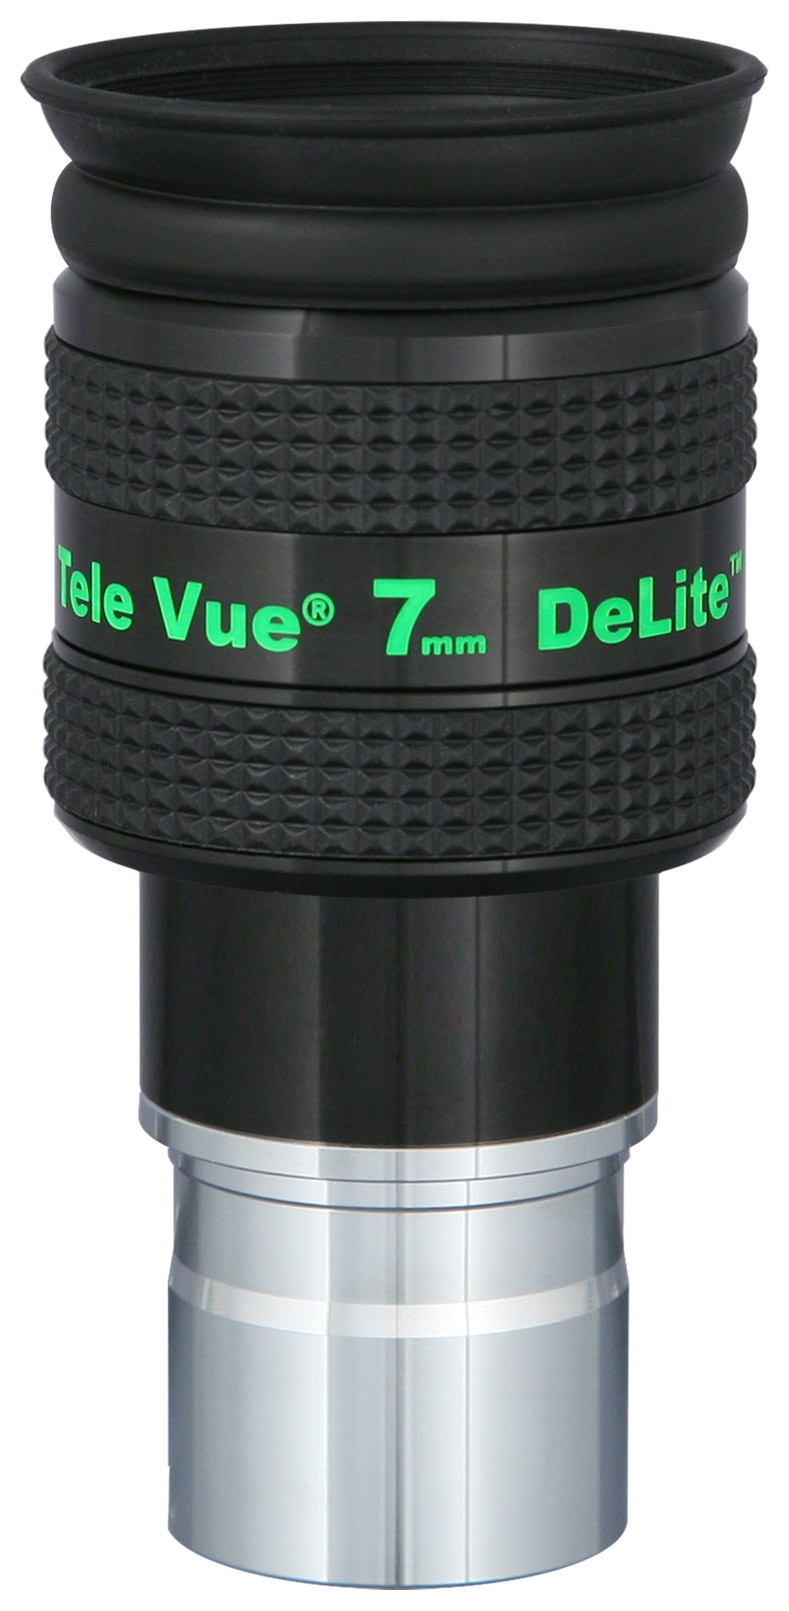 DeLite 7mm Eyepiece